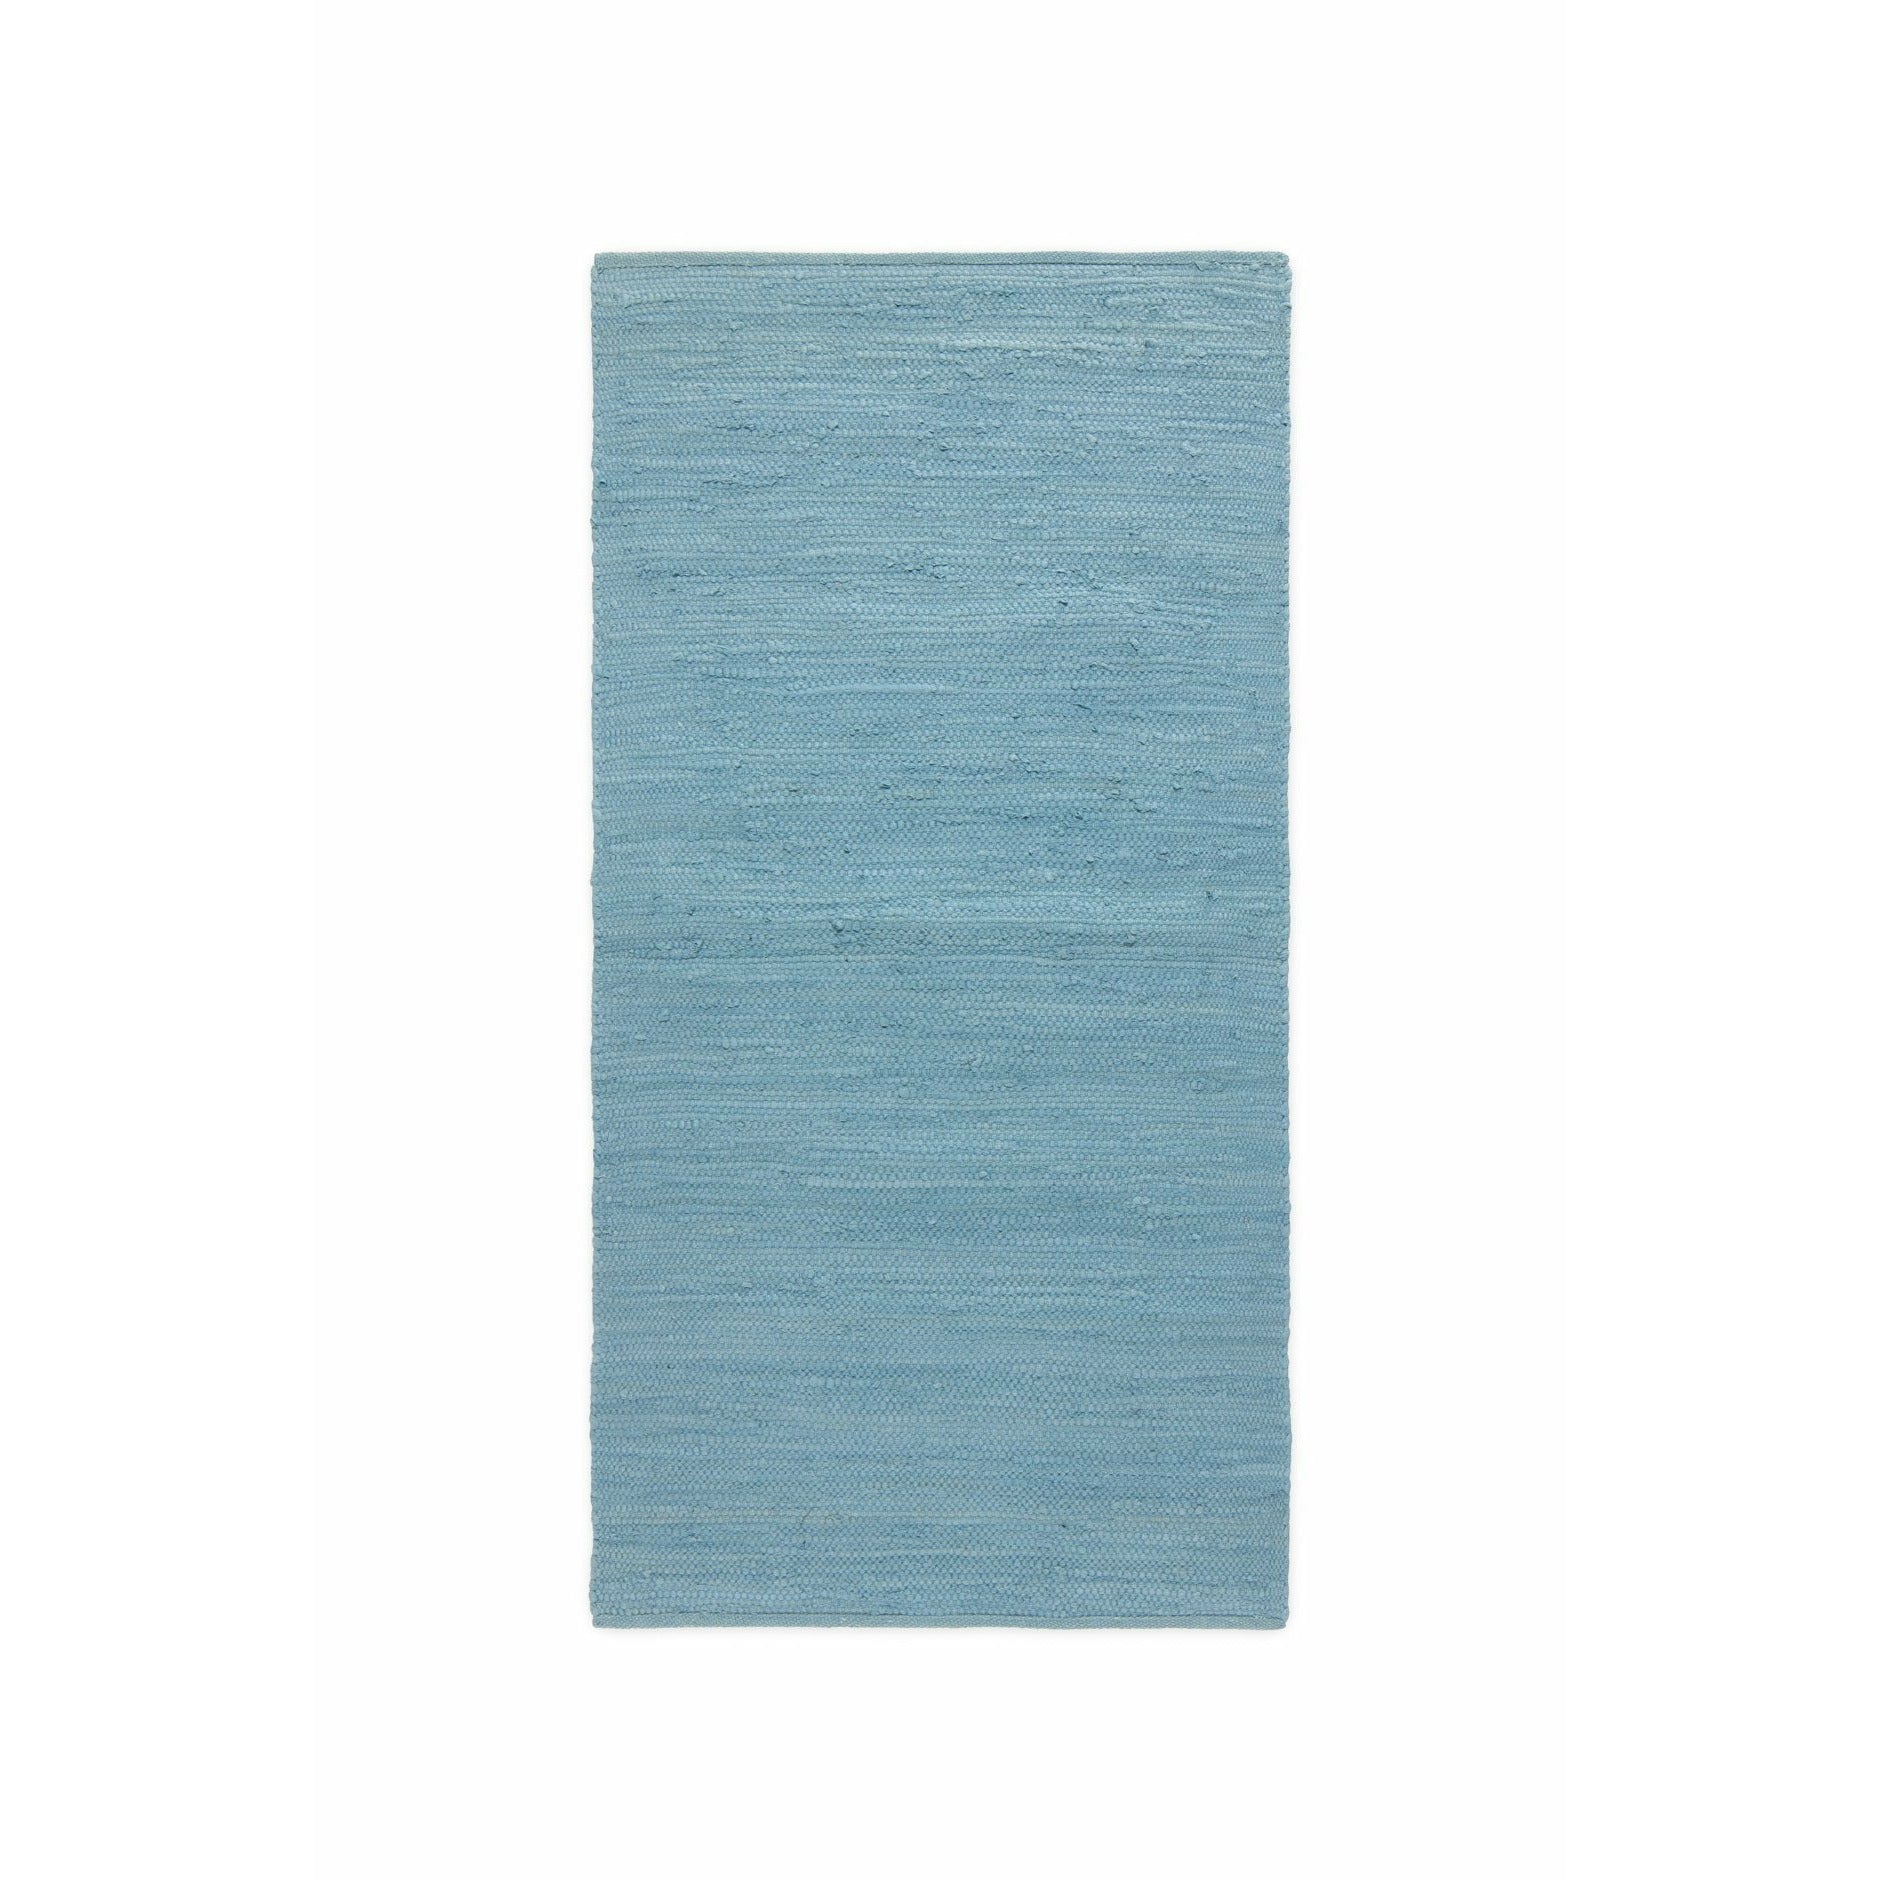 Teppi solid bómullar teppi eilífðin, 65 x 135 cm